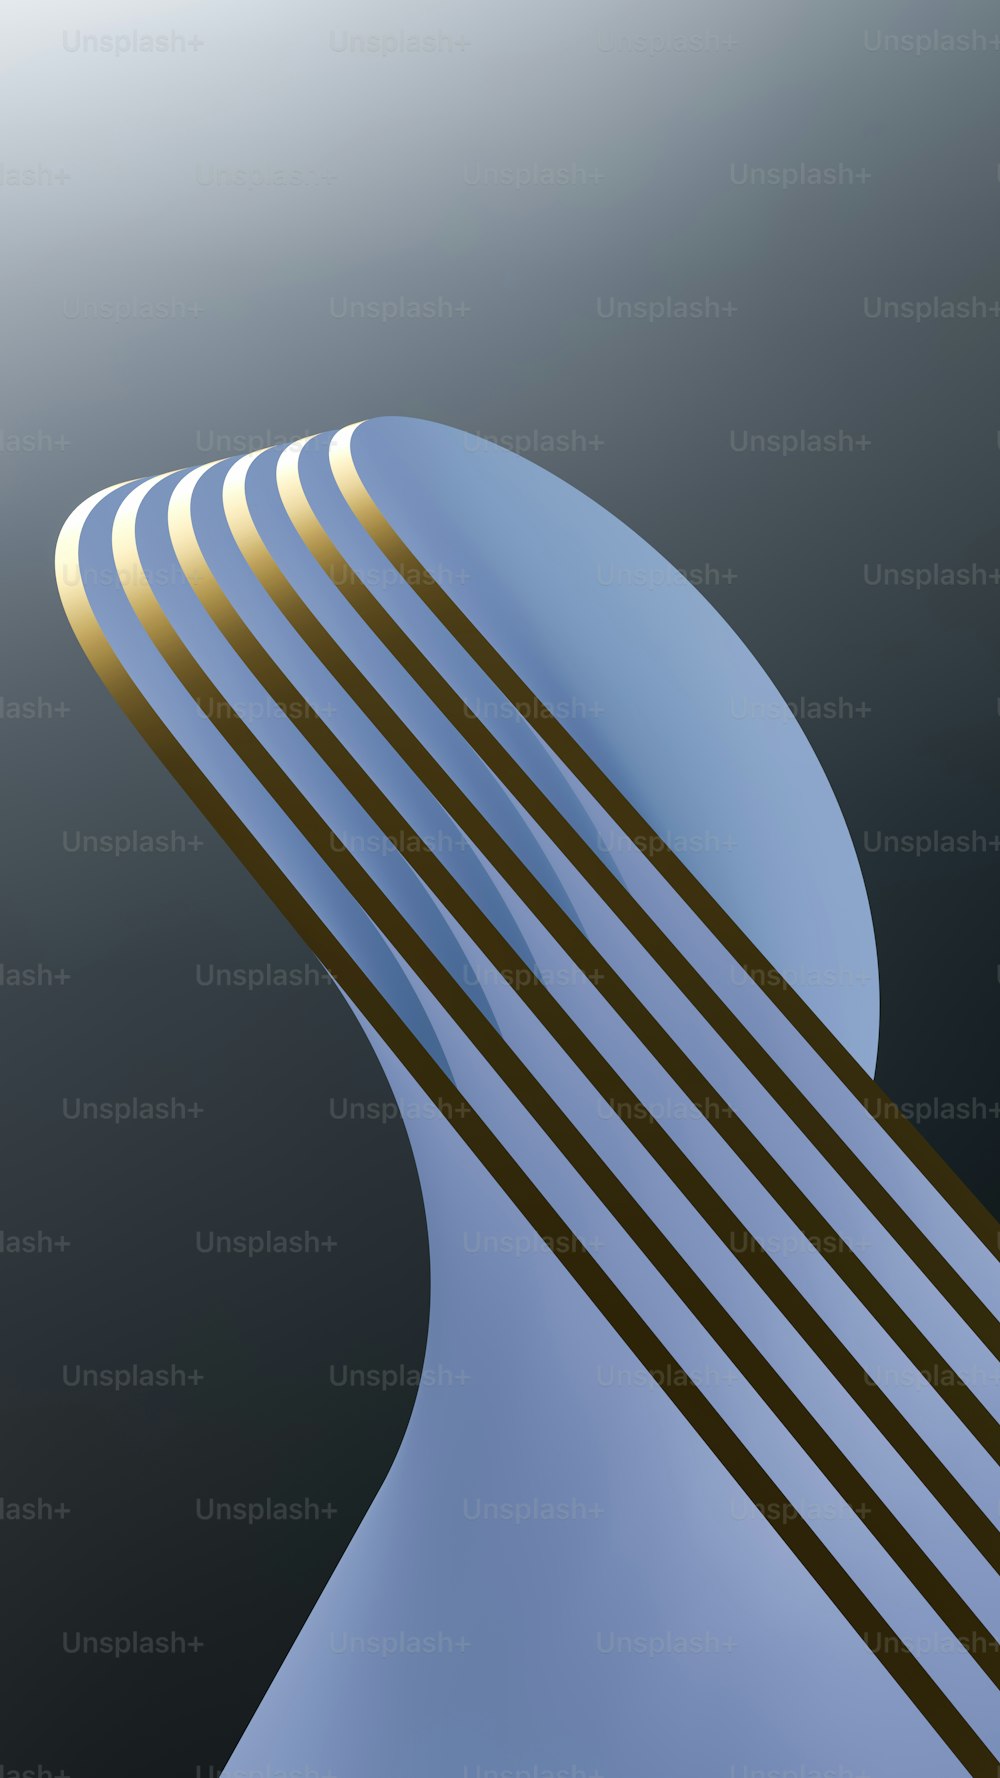 Una imagen abstracta de una estructura curva con rayas doradas y azules